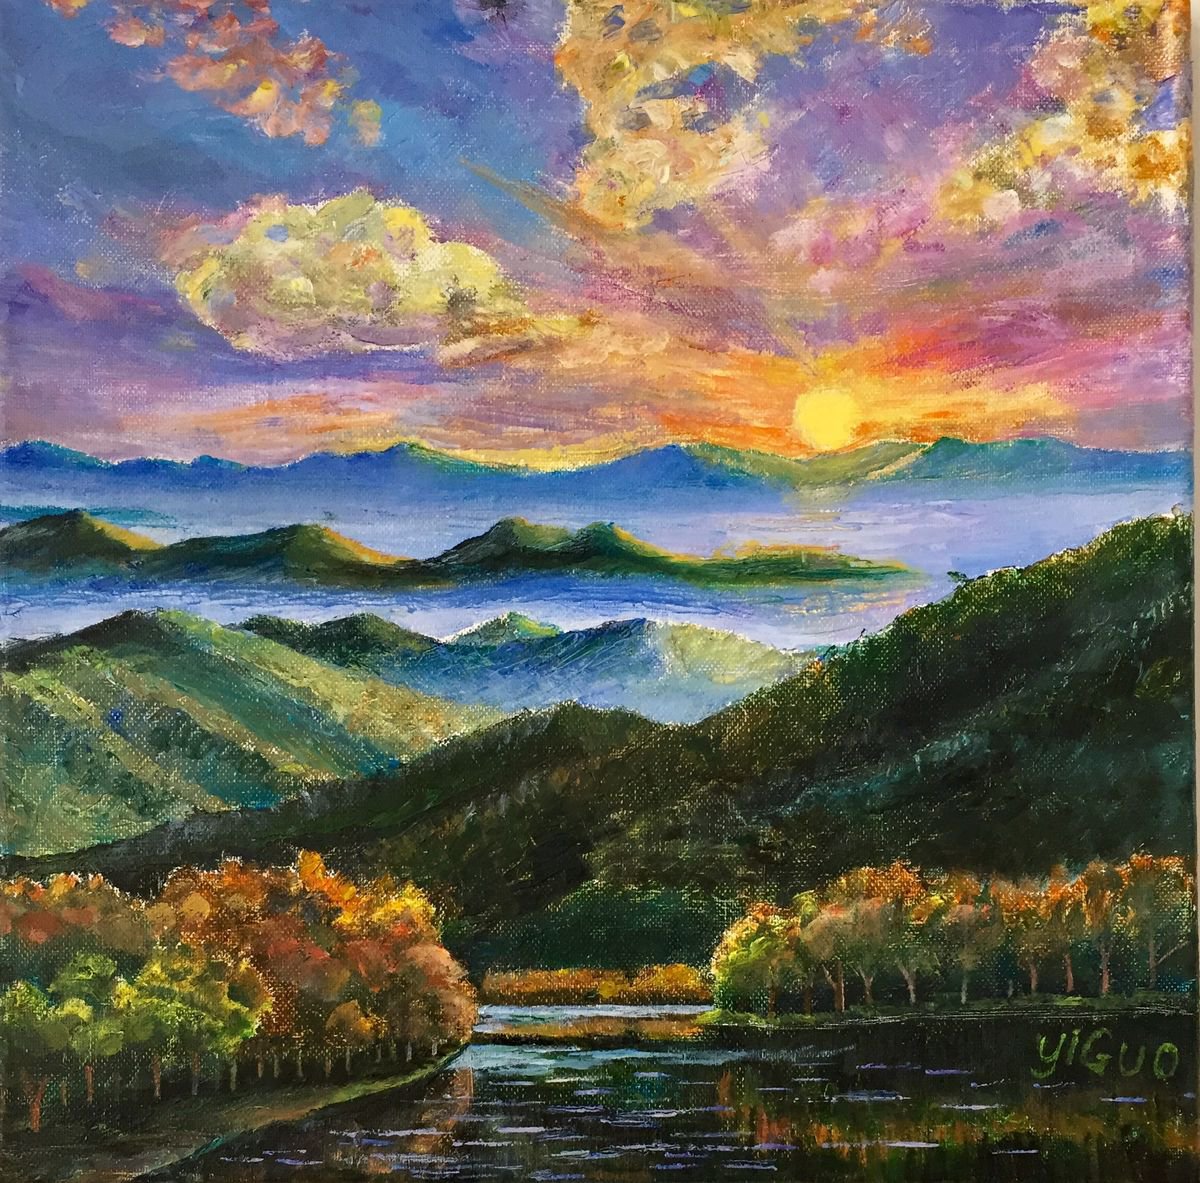 Sunset on Appalachian Mountains by Yi Guo